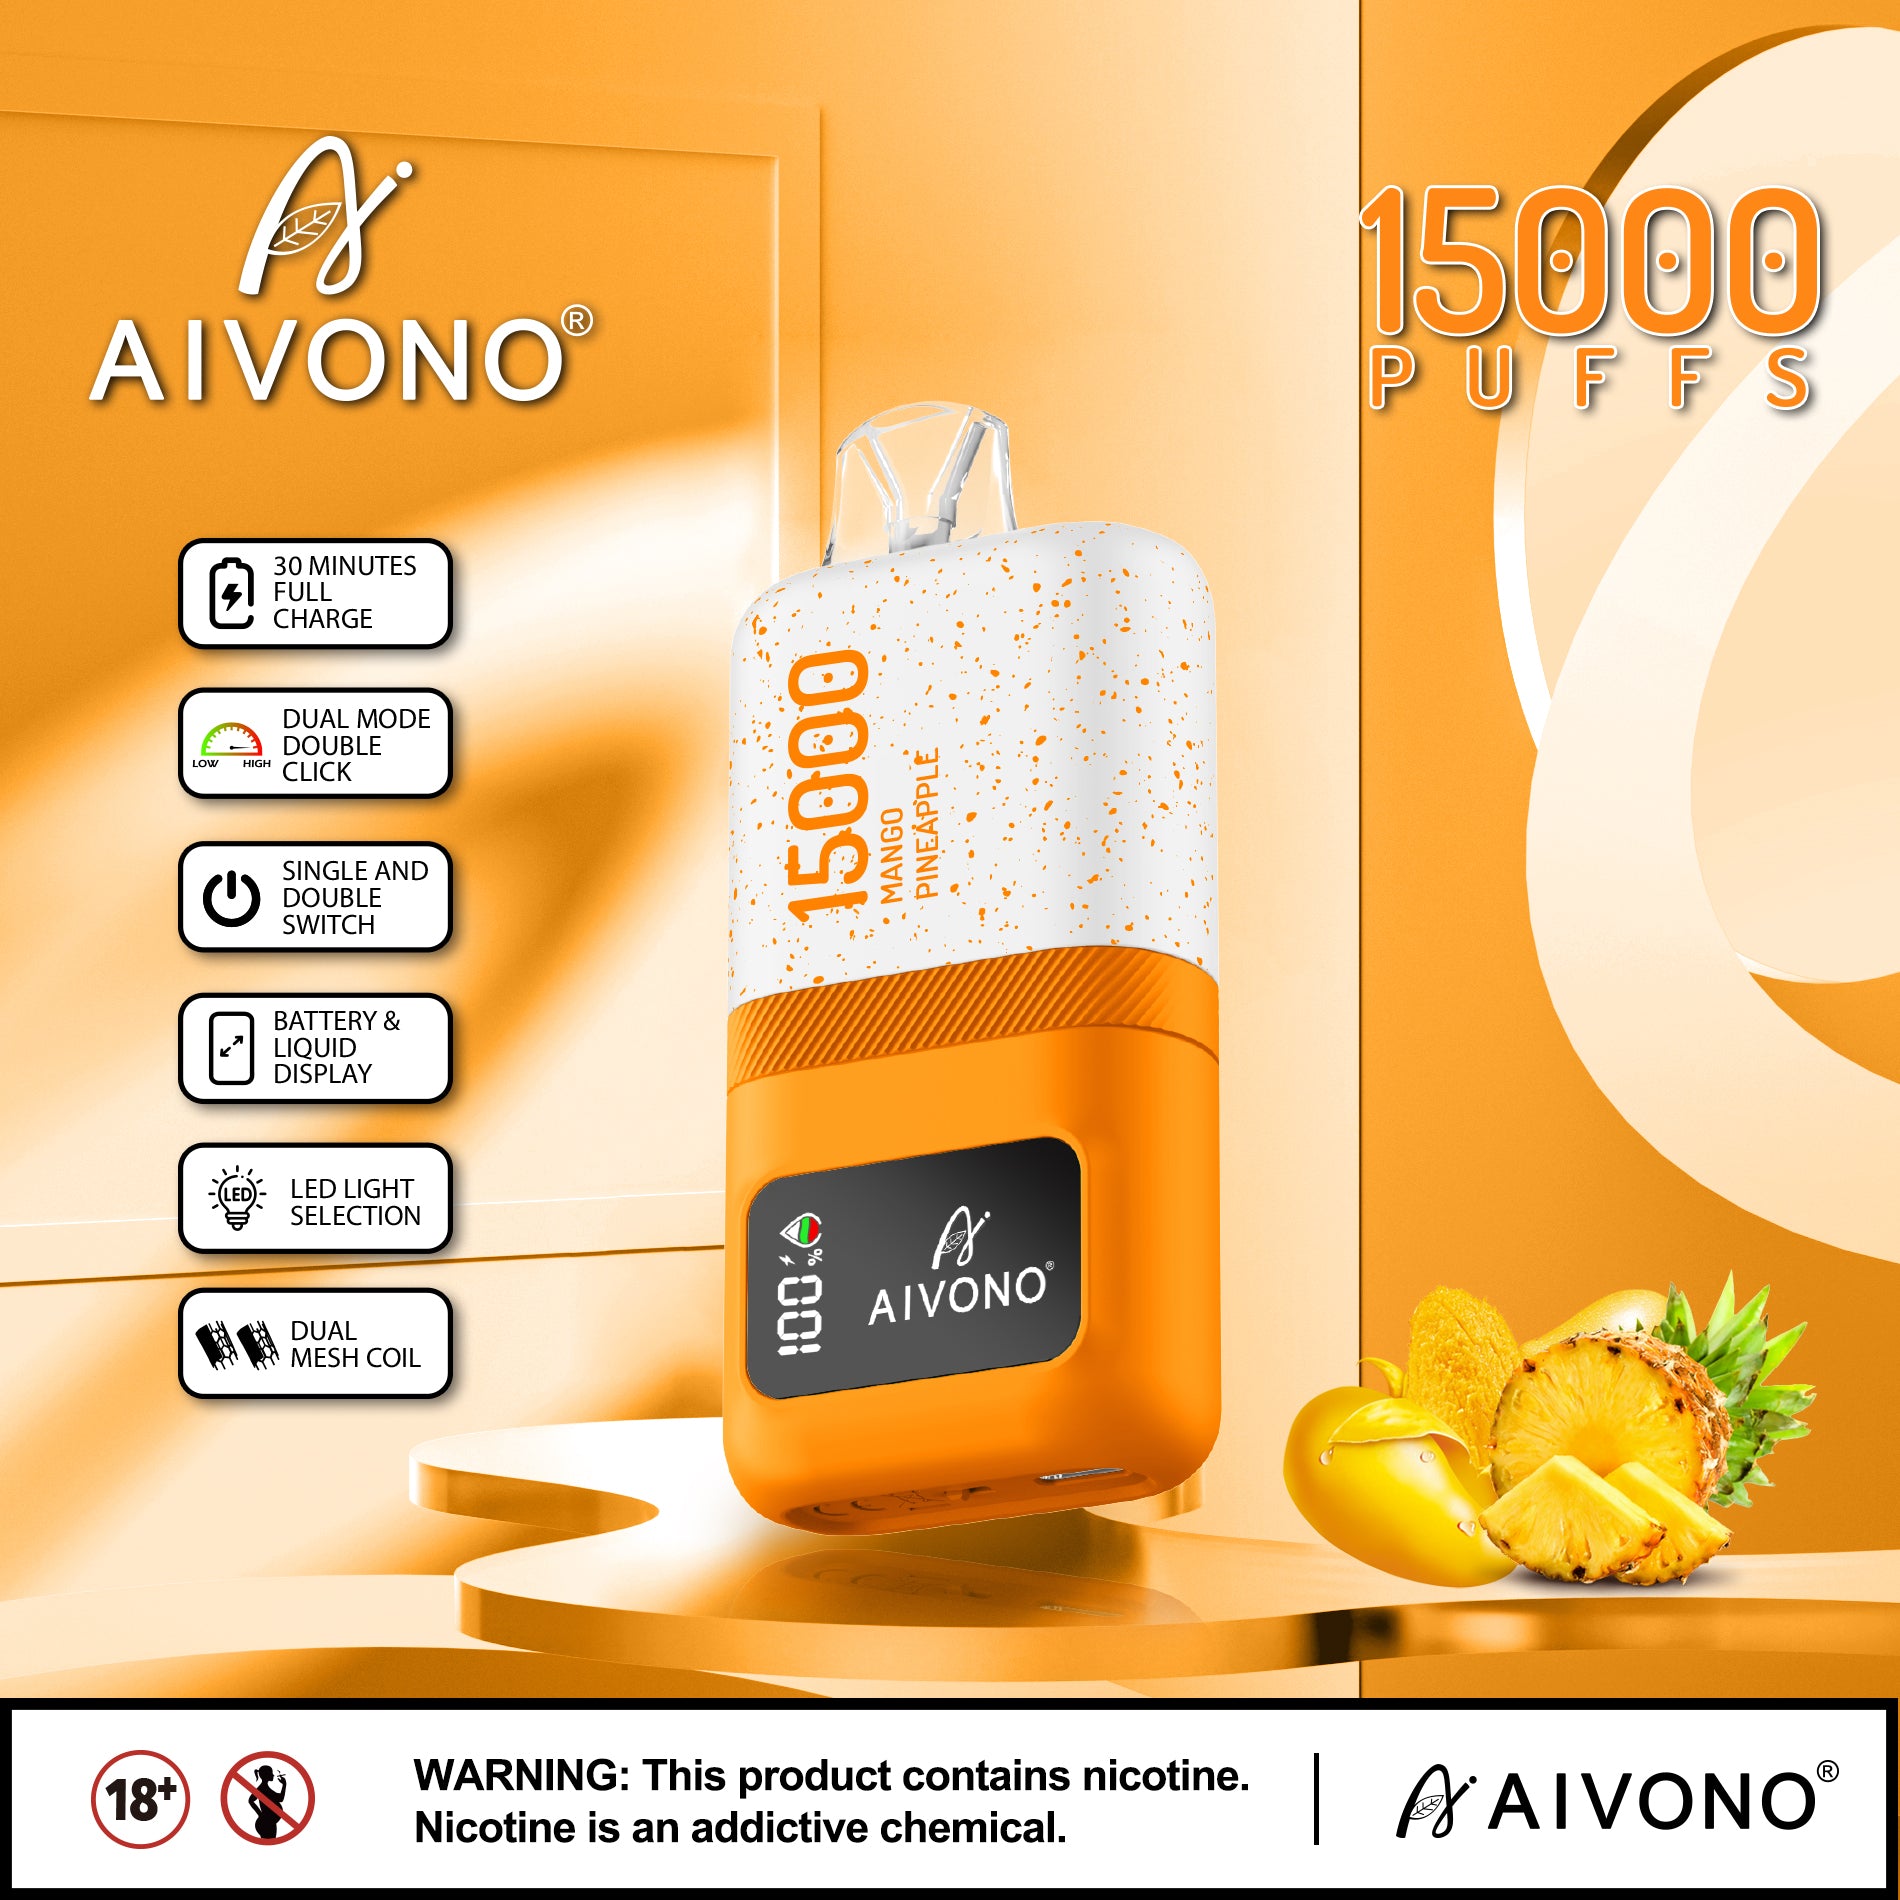 AIVONO MAGIC 15000 Puffs Disposable Vape Wholesale - Vapz Vape Wholesale